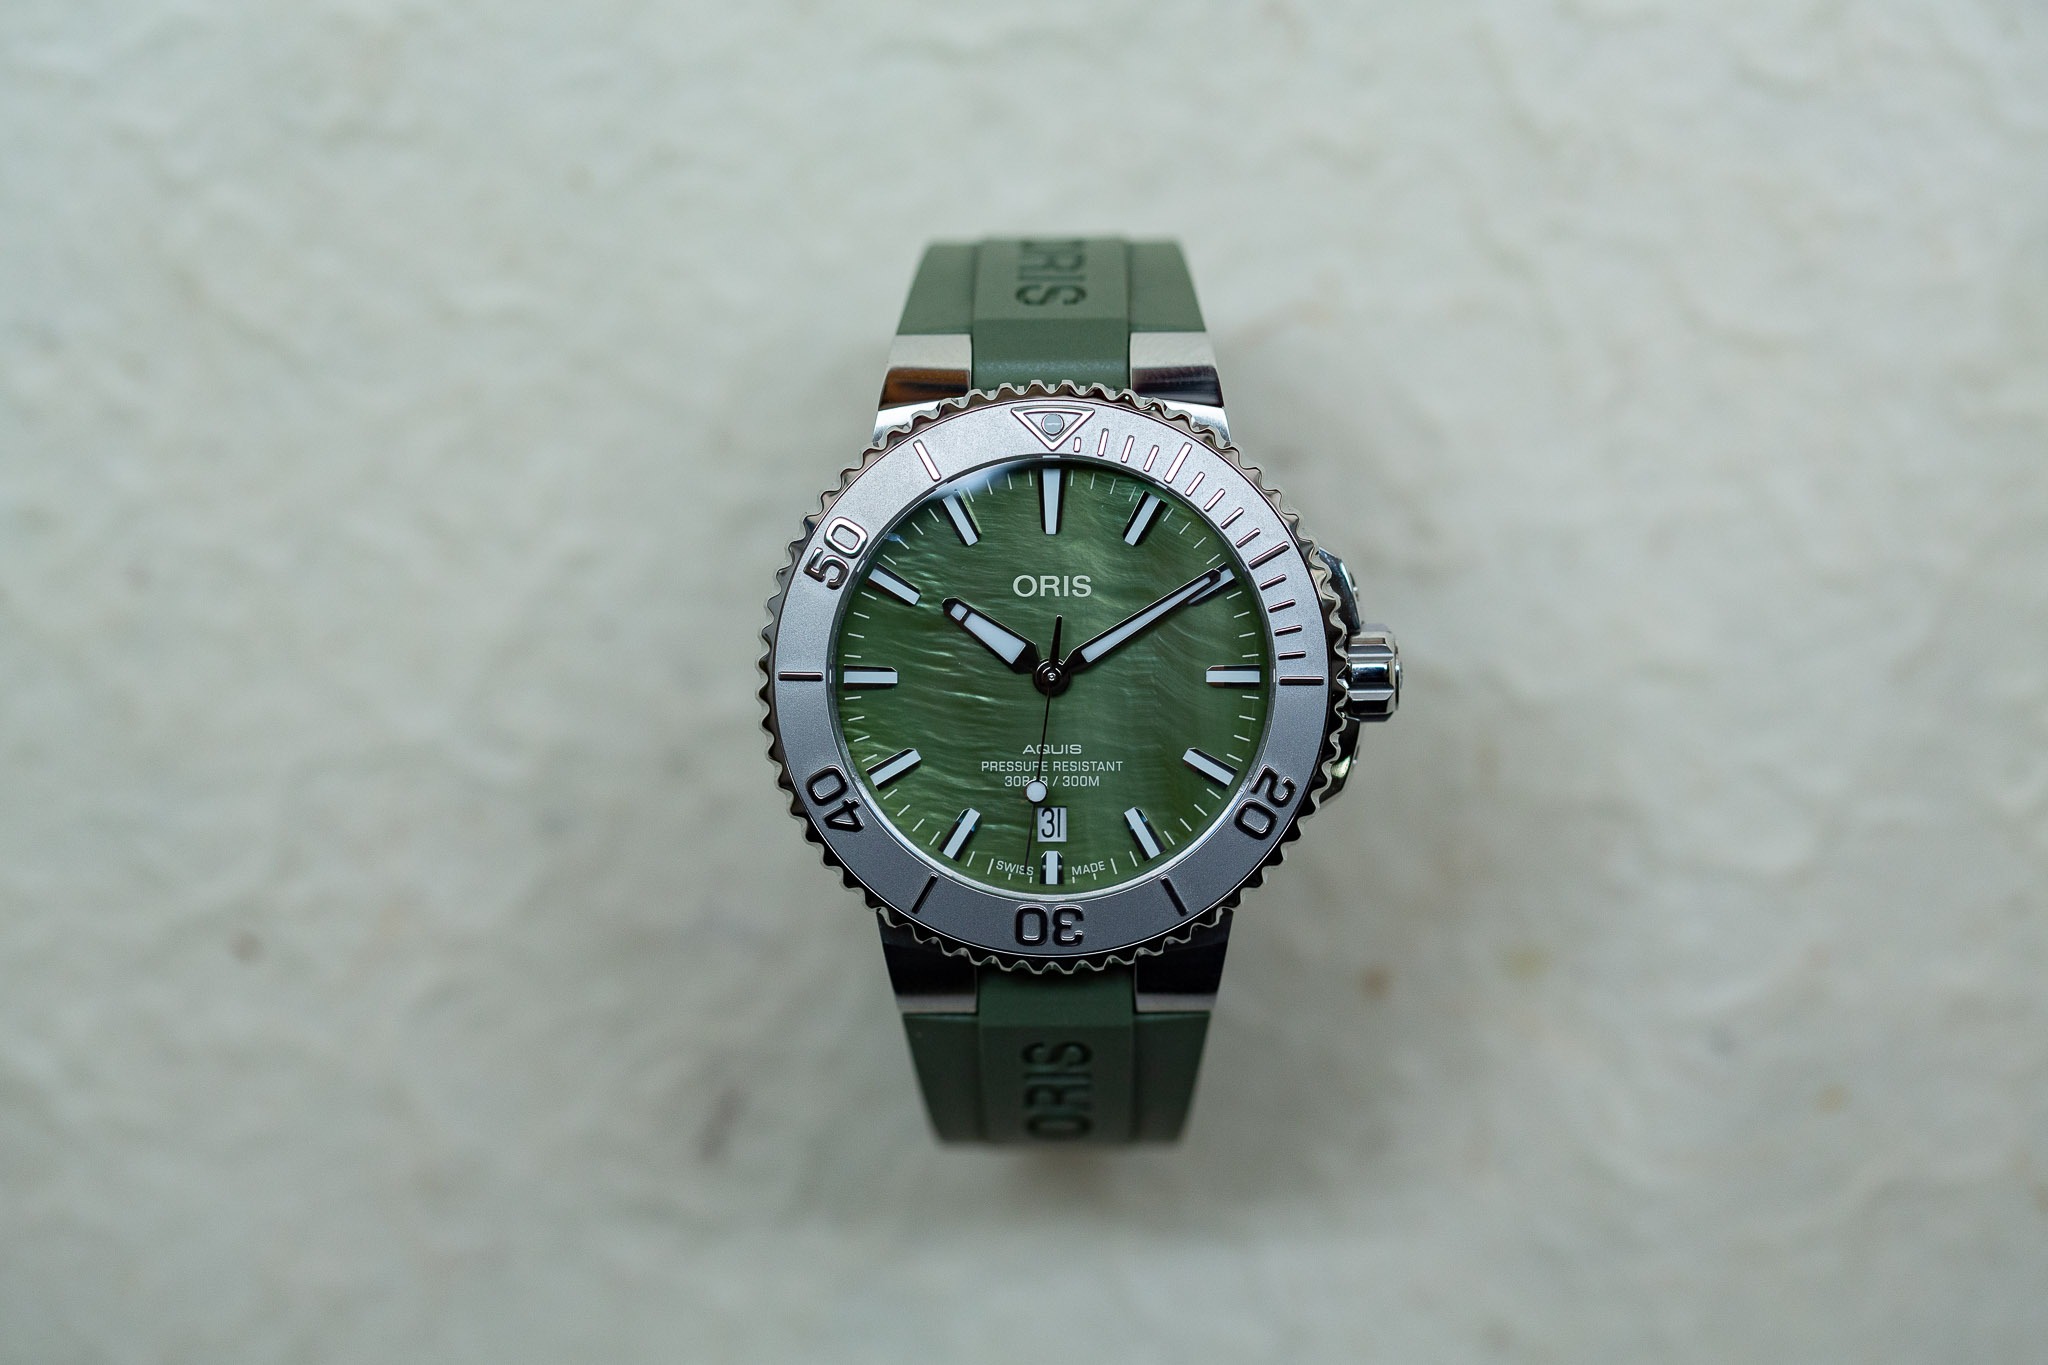 Oris Aquis New-York Harbor Limited Edition : découvrez une nouvelle montre de plongée en édition limitée et son cadran en nacre verte.